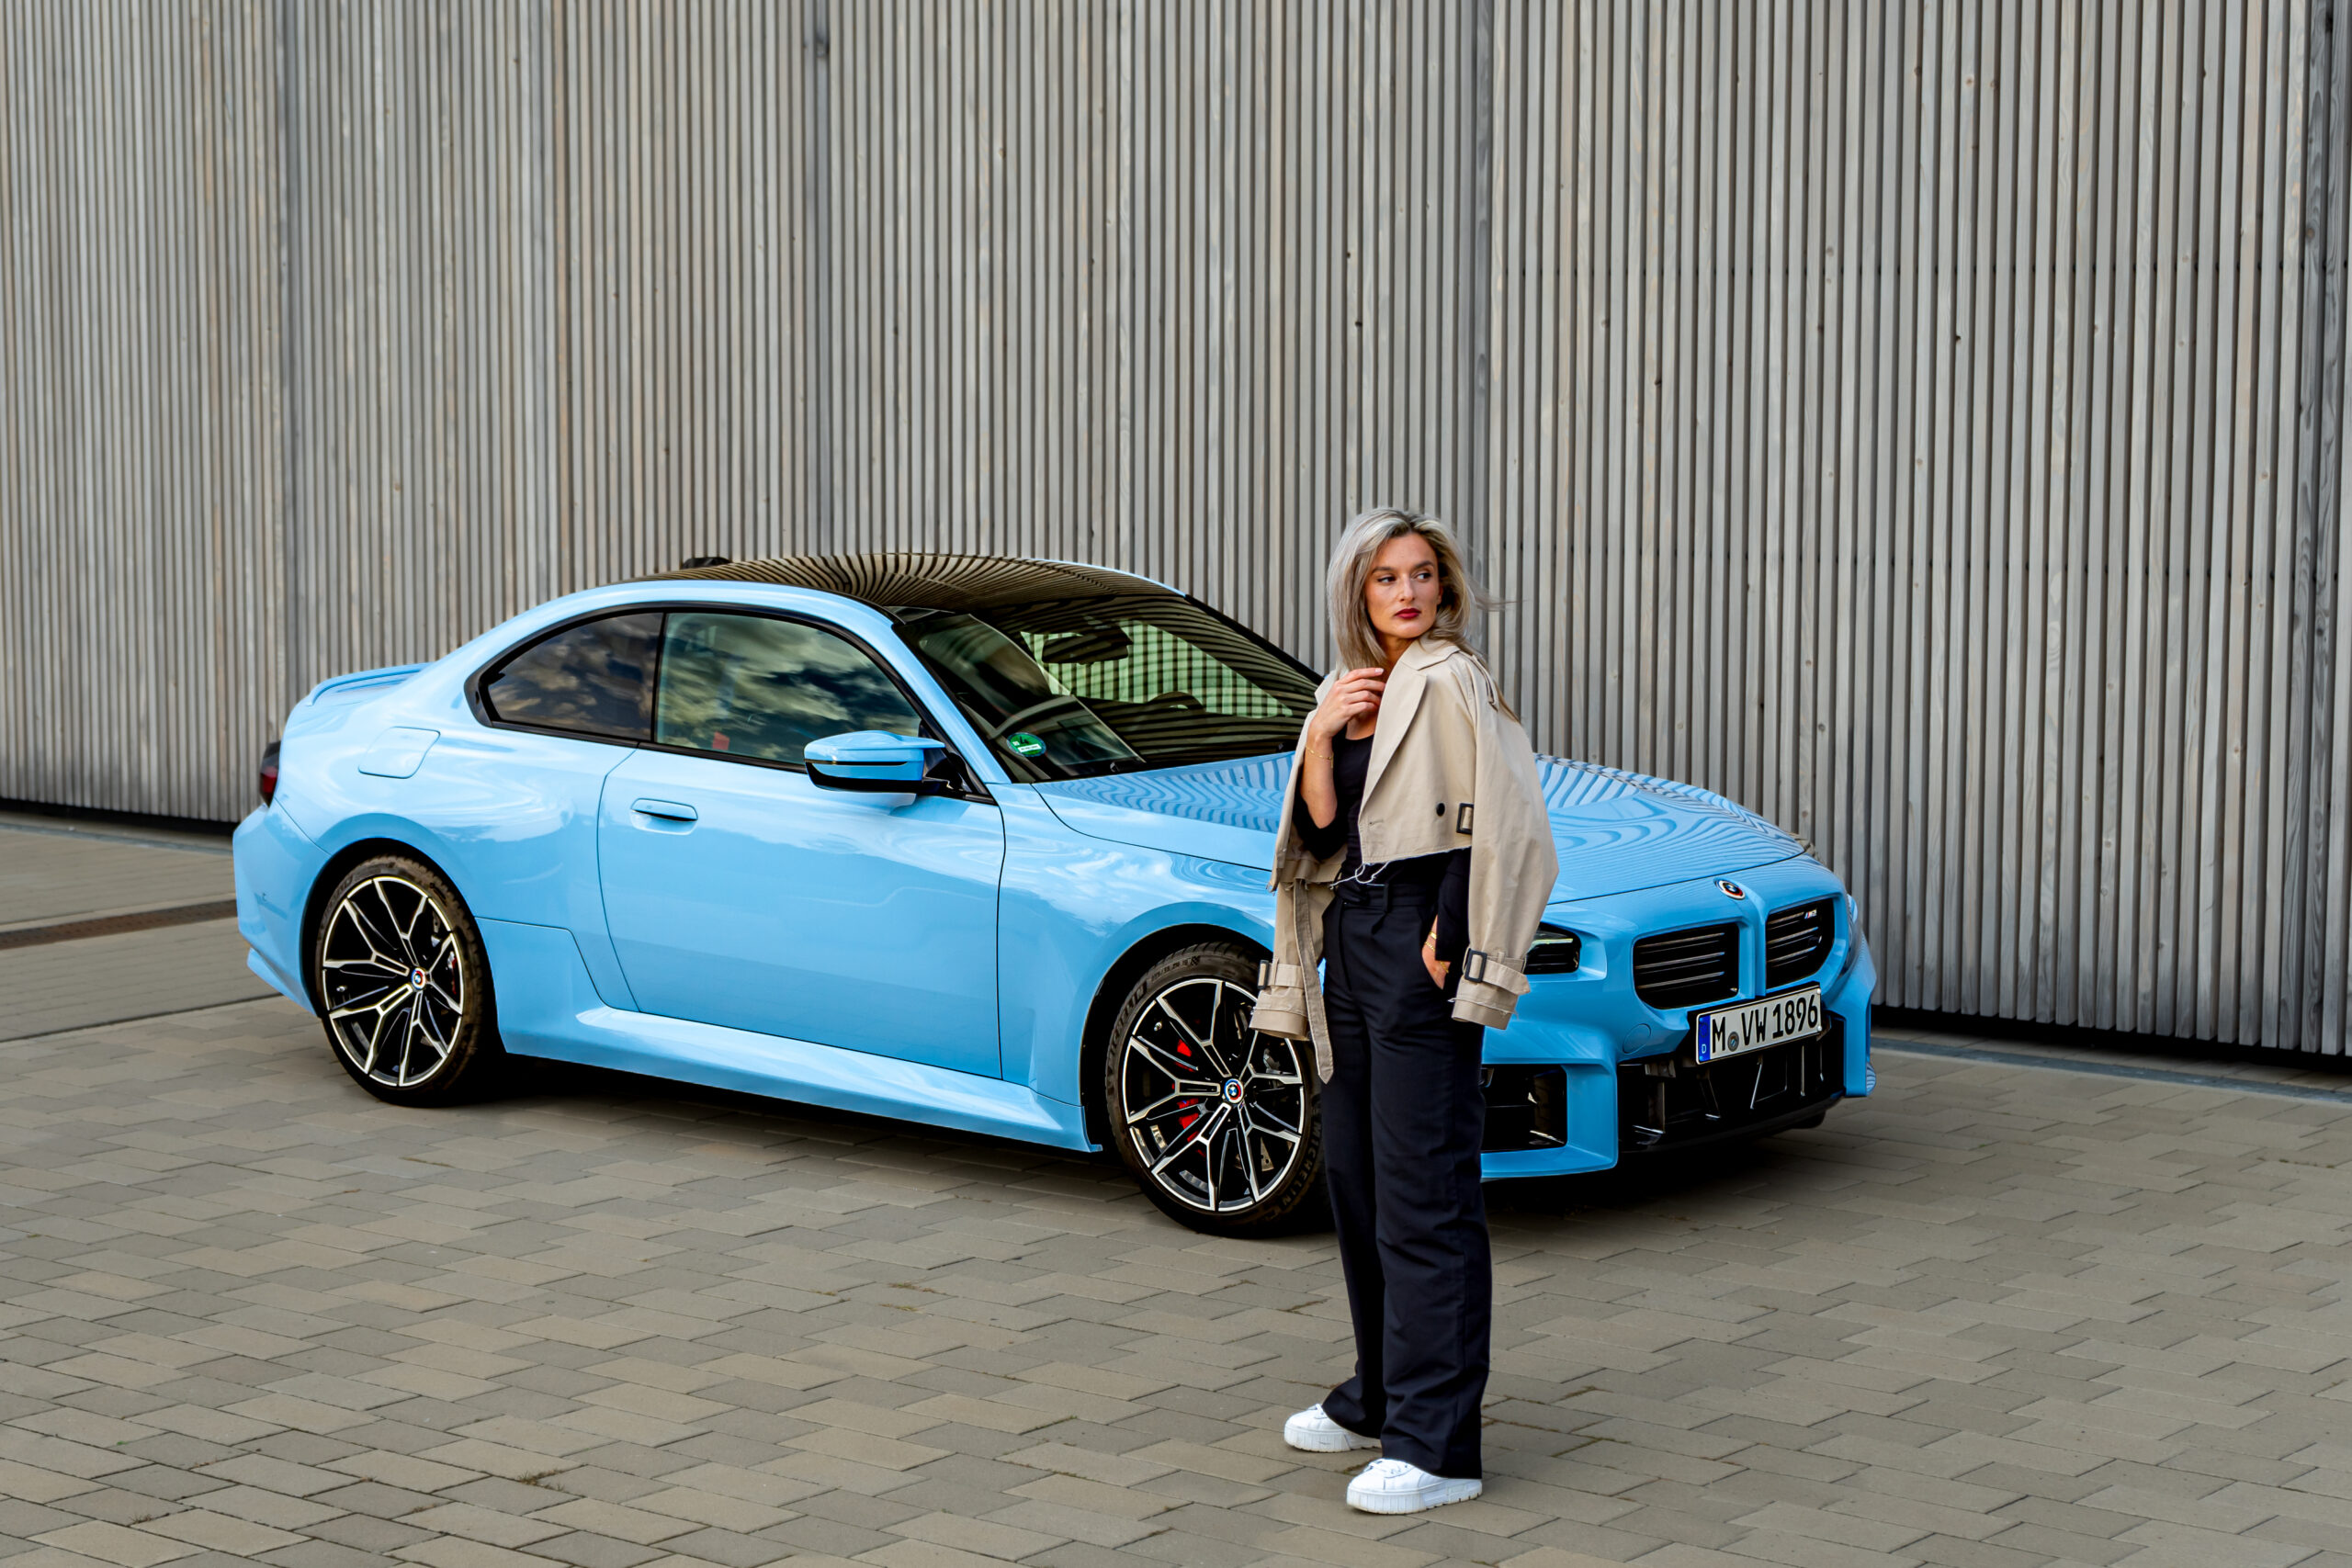 Der neue BMW M2: Kraftvoll, Kompakt und Sportlich